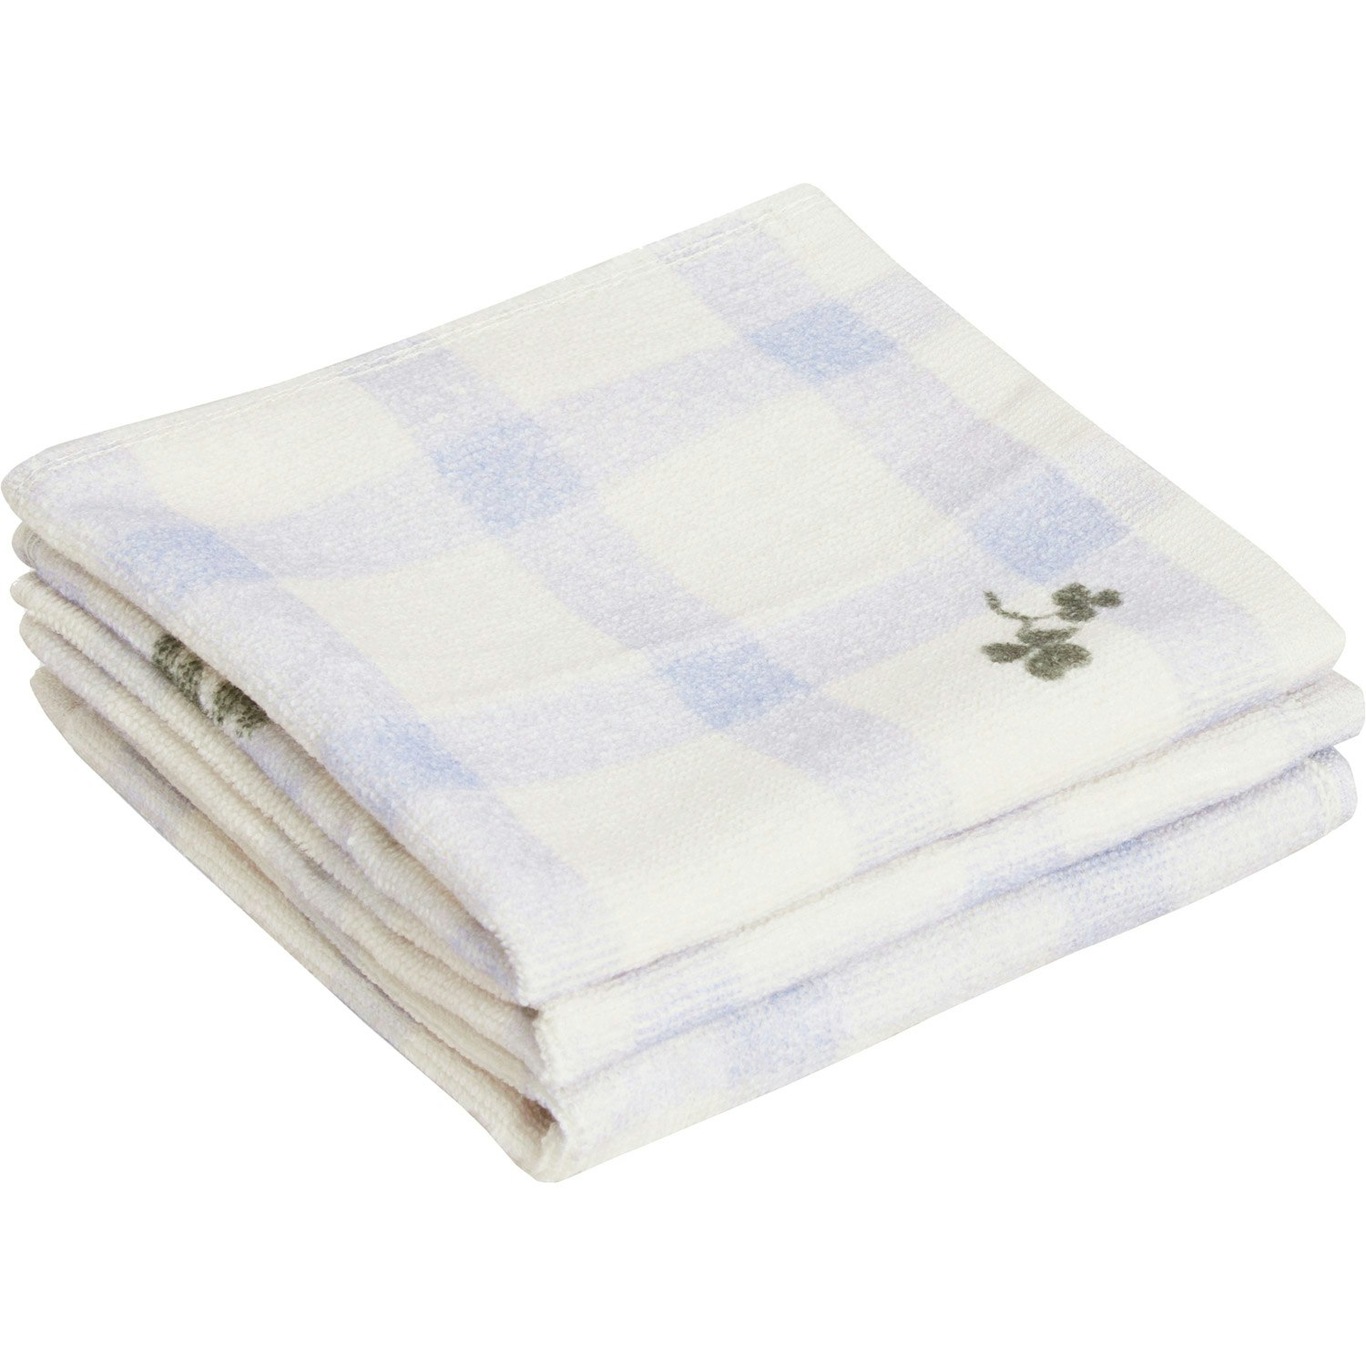 Gingham Sorrel Blue Washcloths 3-pack, 30x30 cm